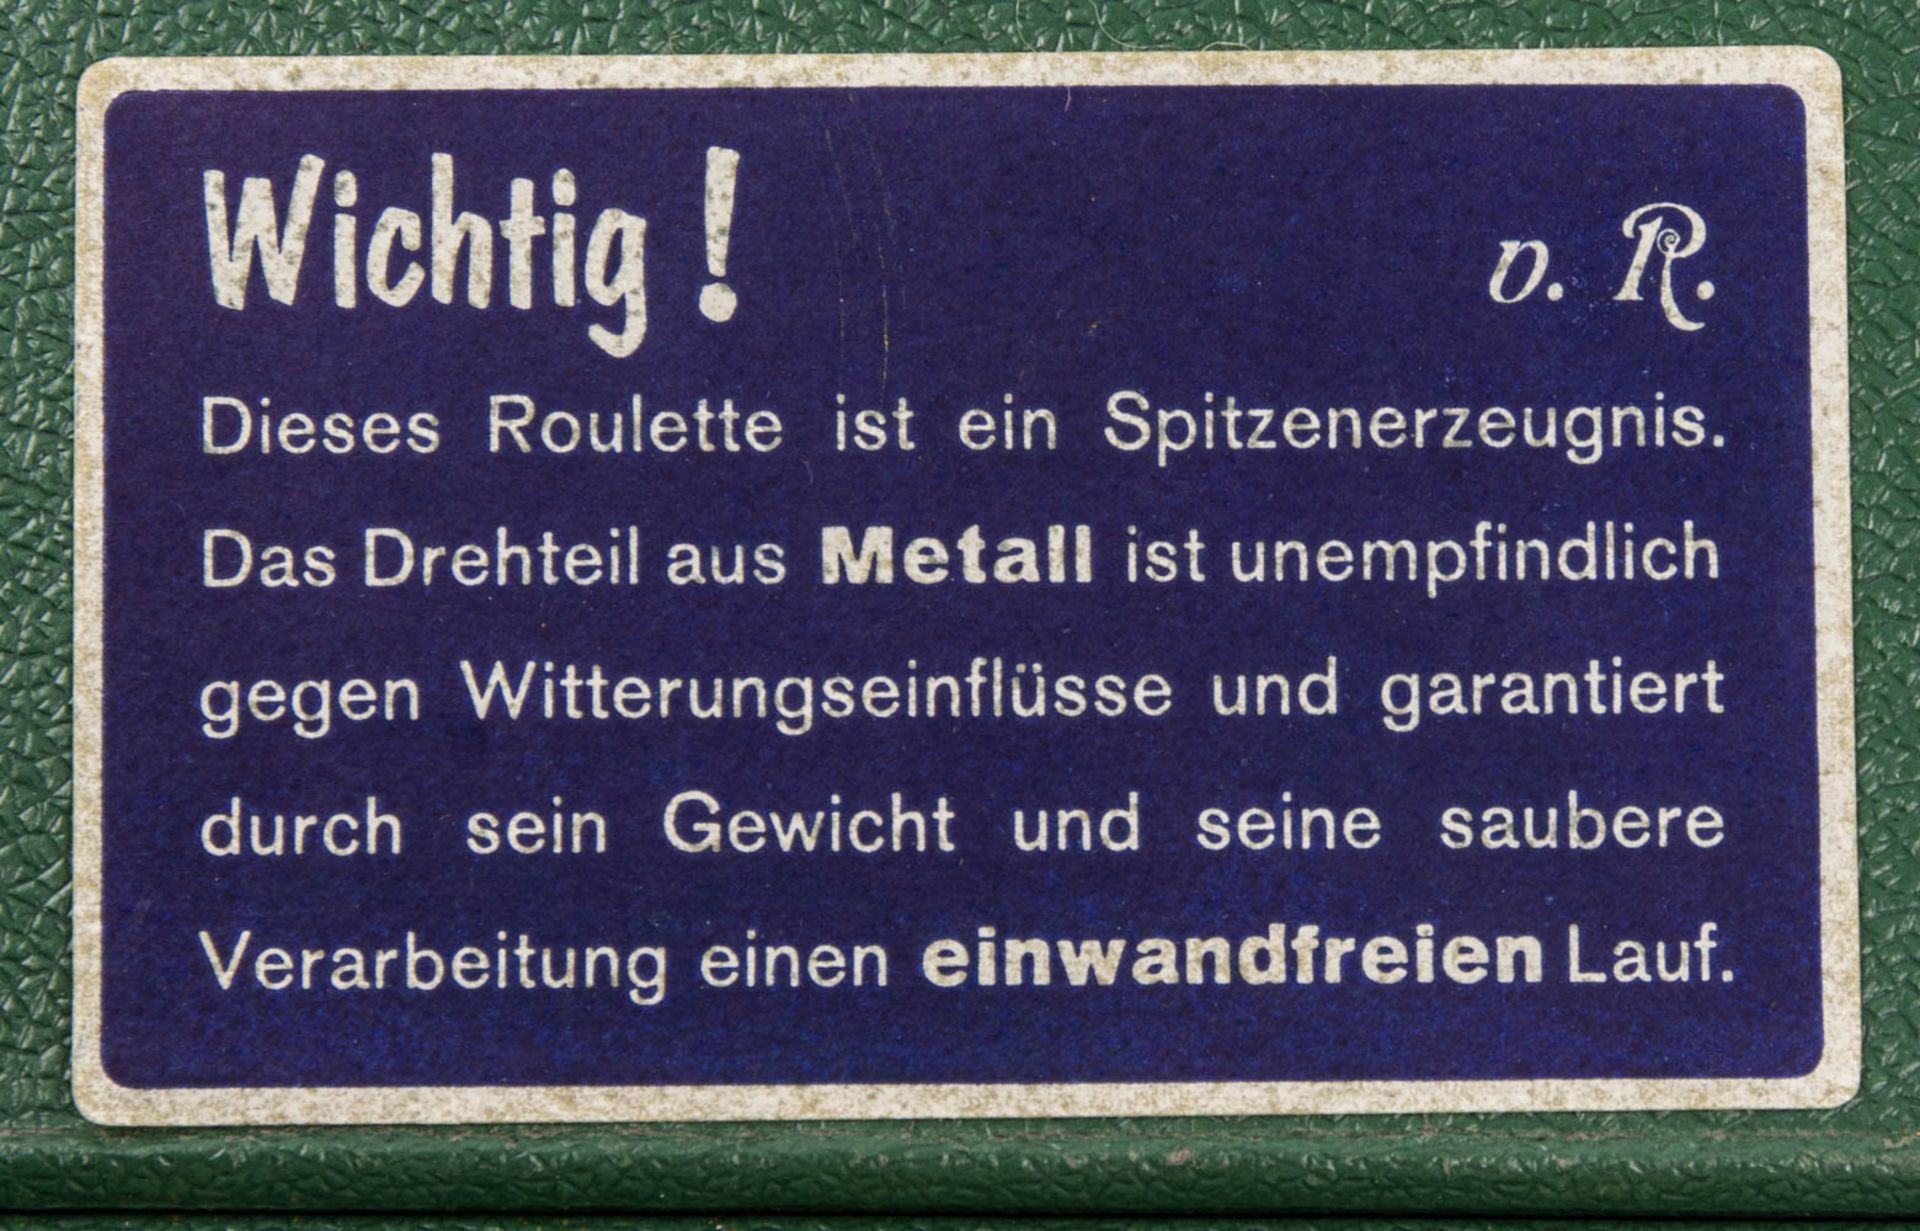 Roulette Glücksspiel in grünem Koffer. - Image 6 of 7